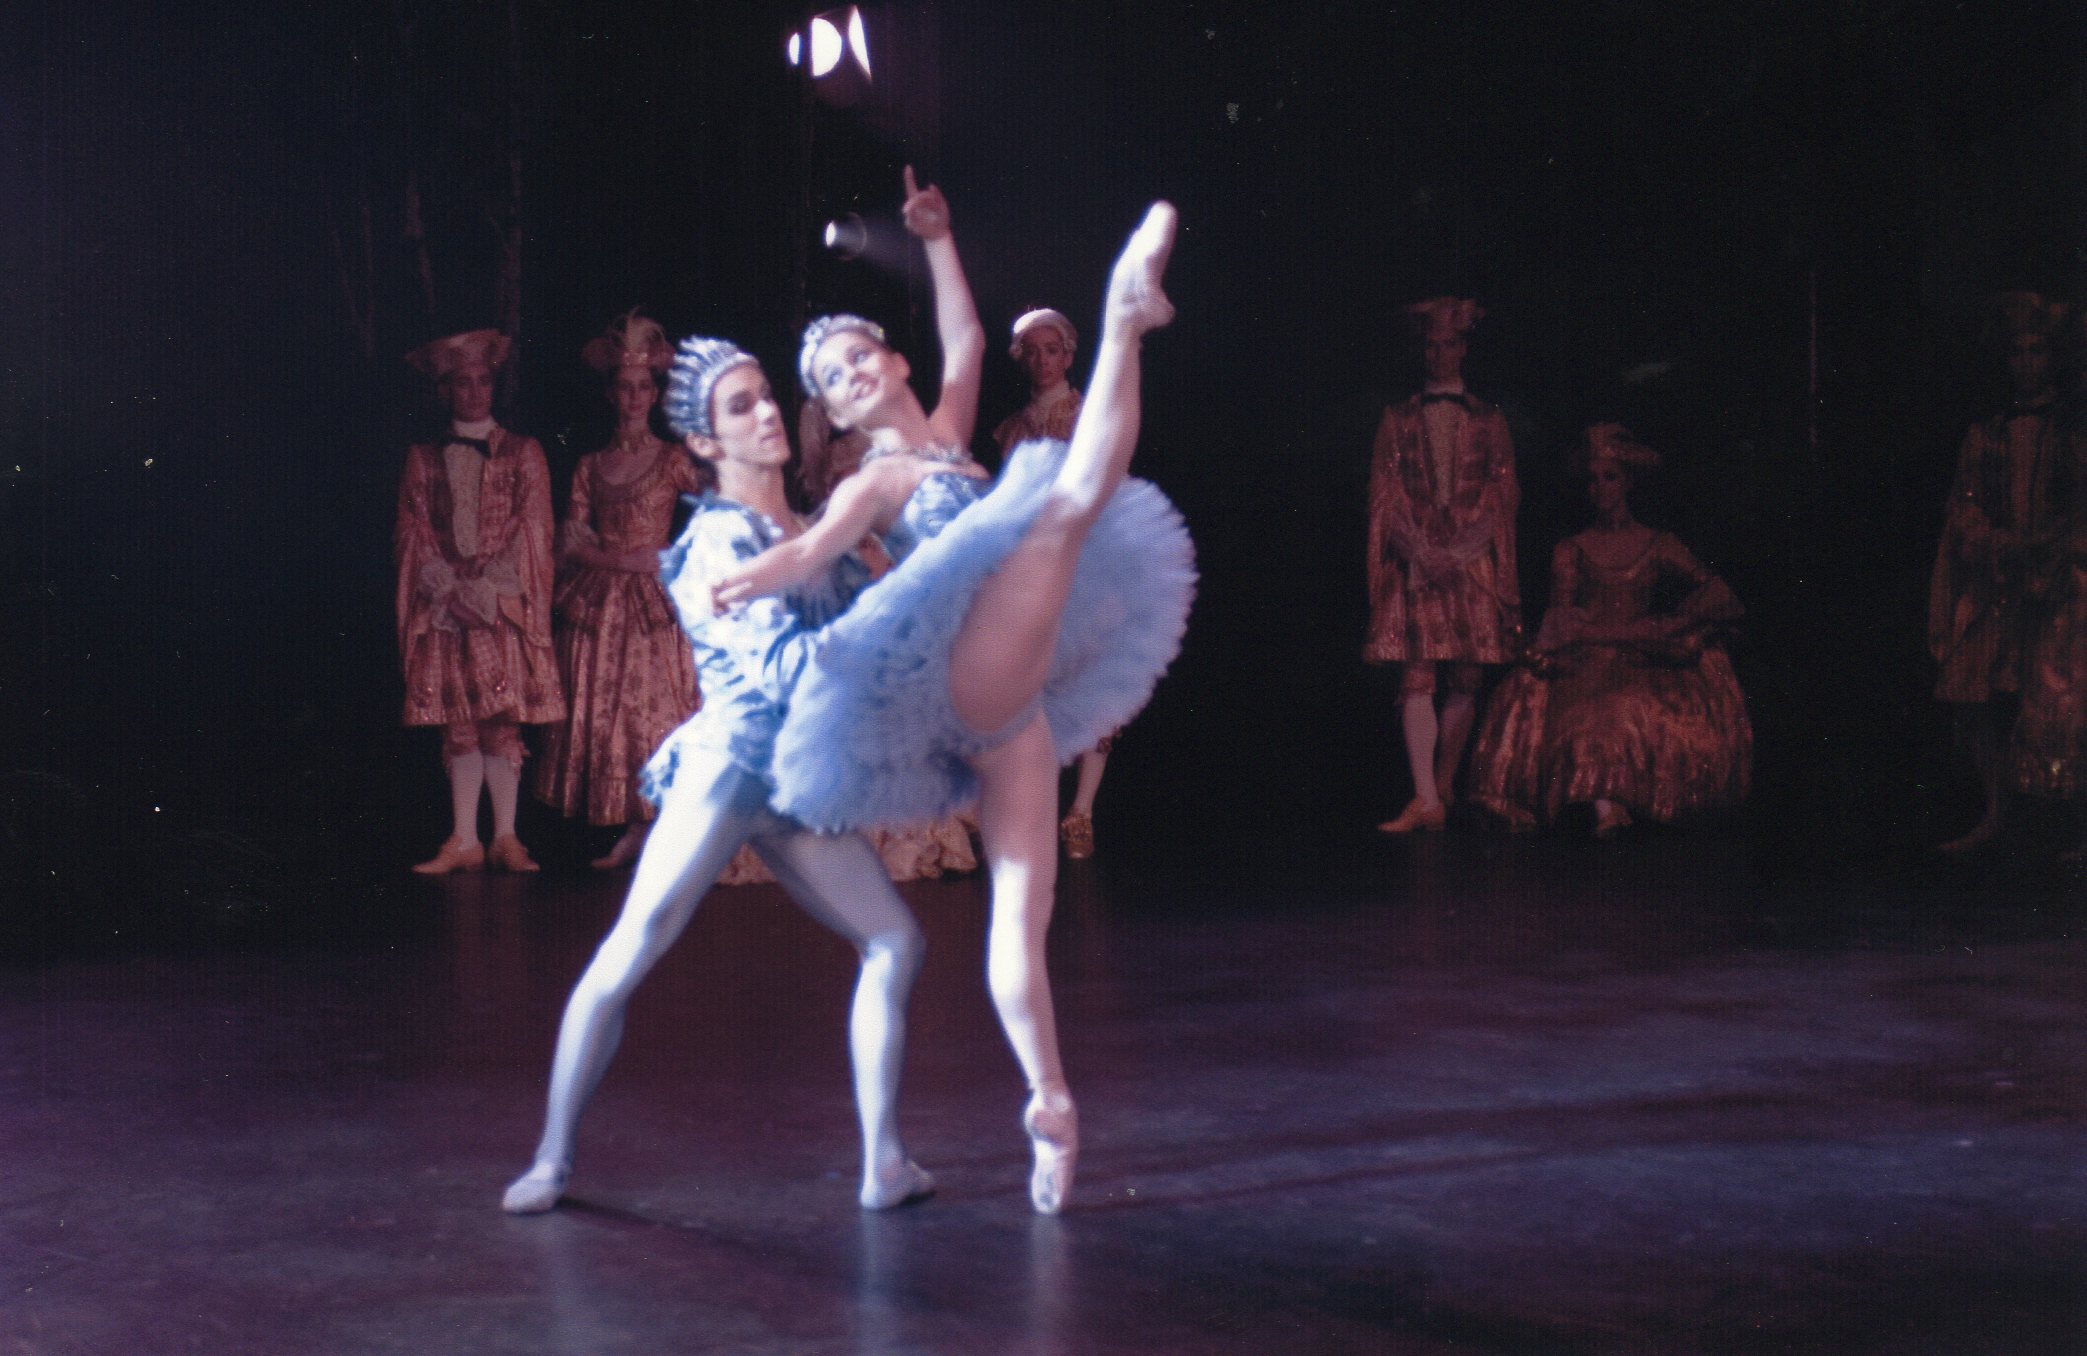  Medhi Angot soutient une danseuse de ballet pendant une représentation